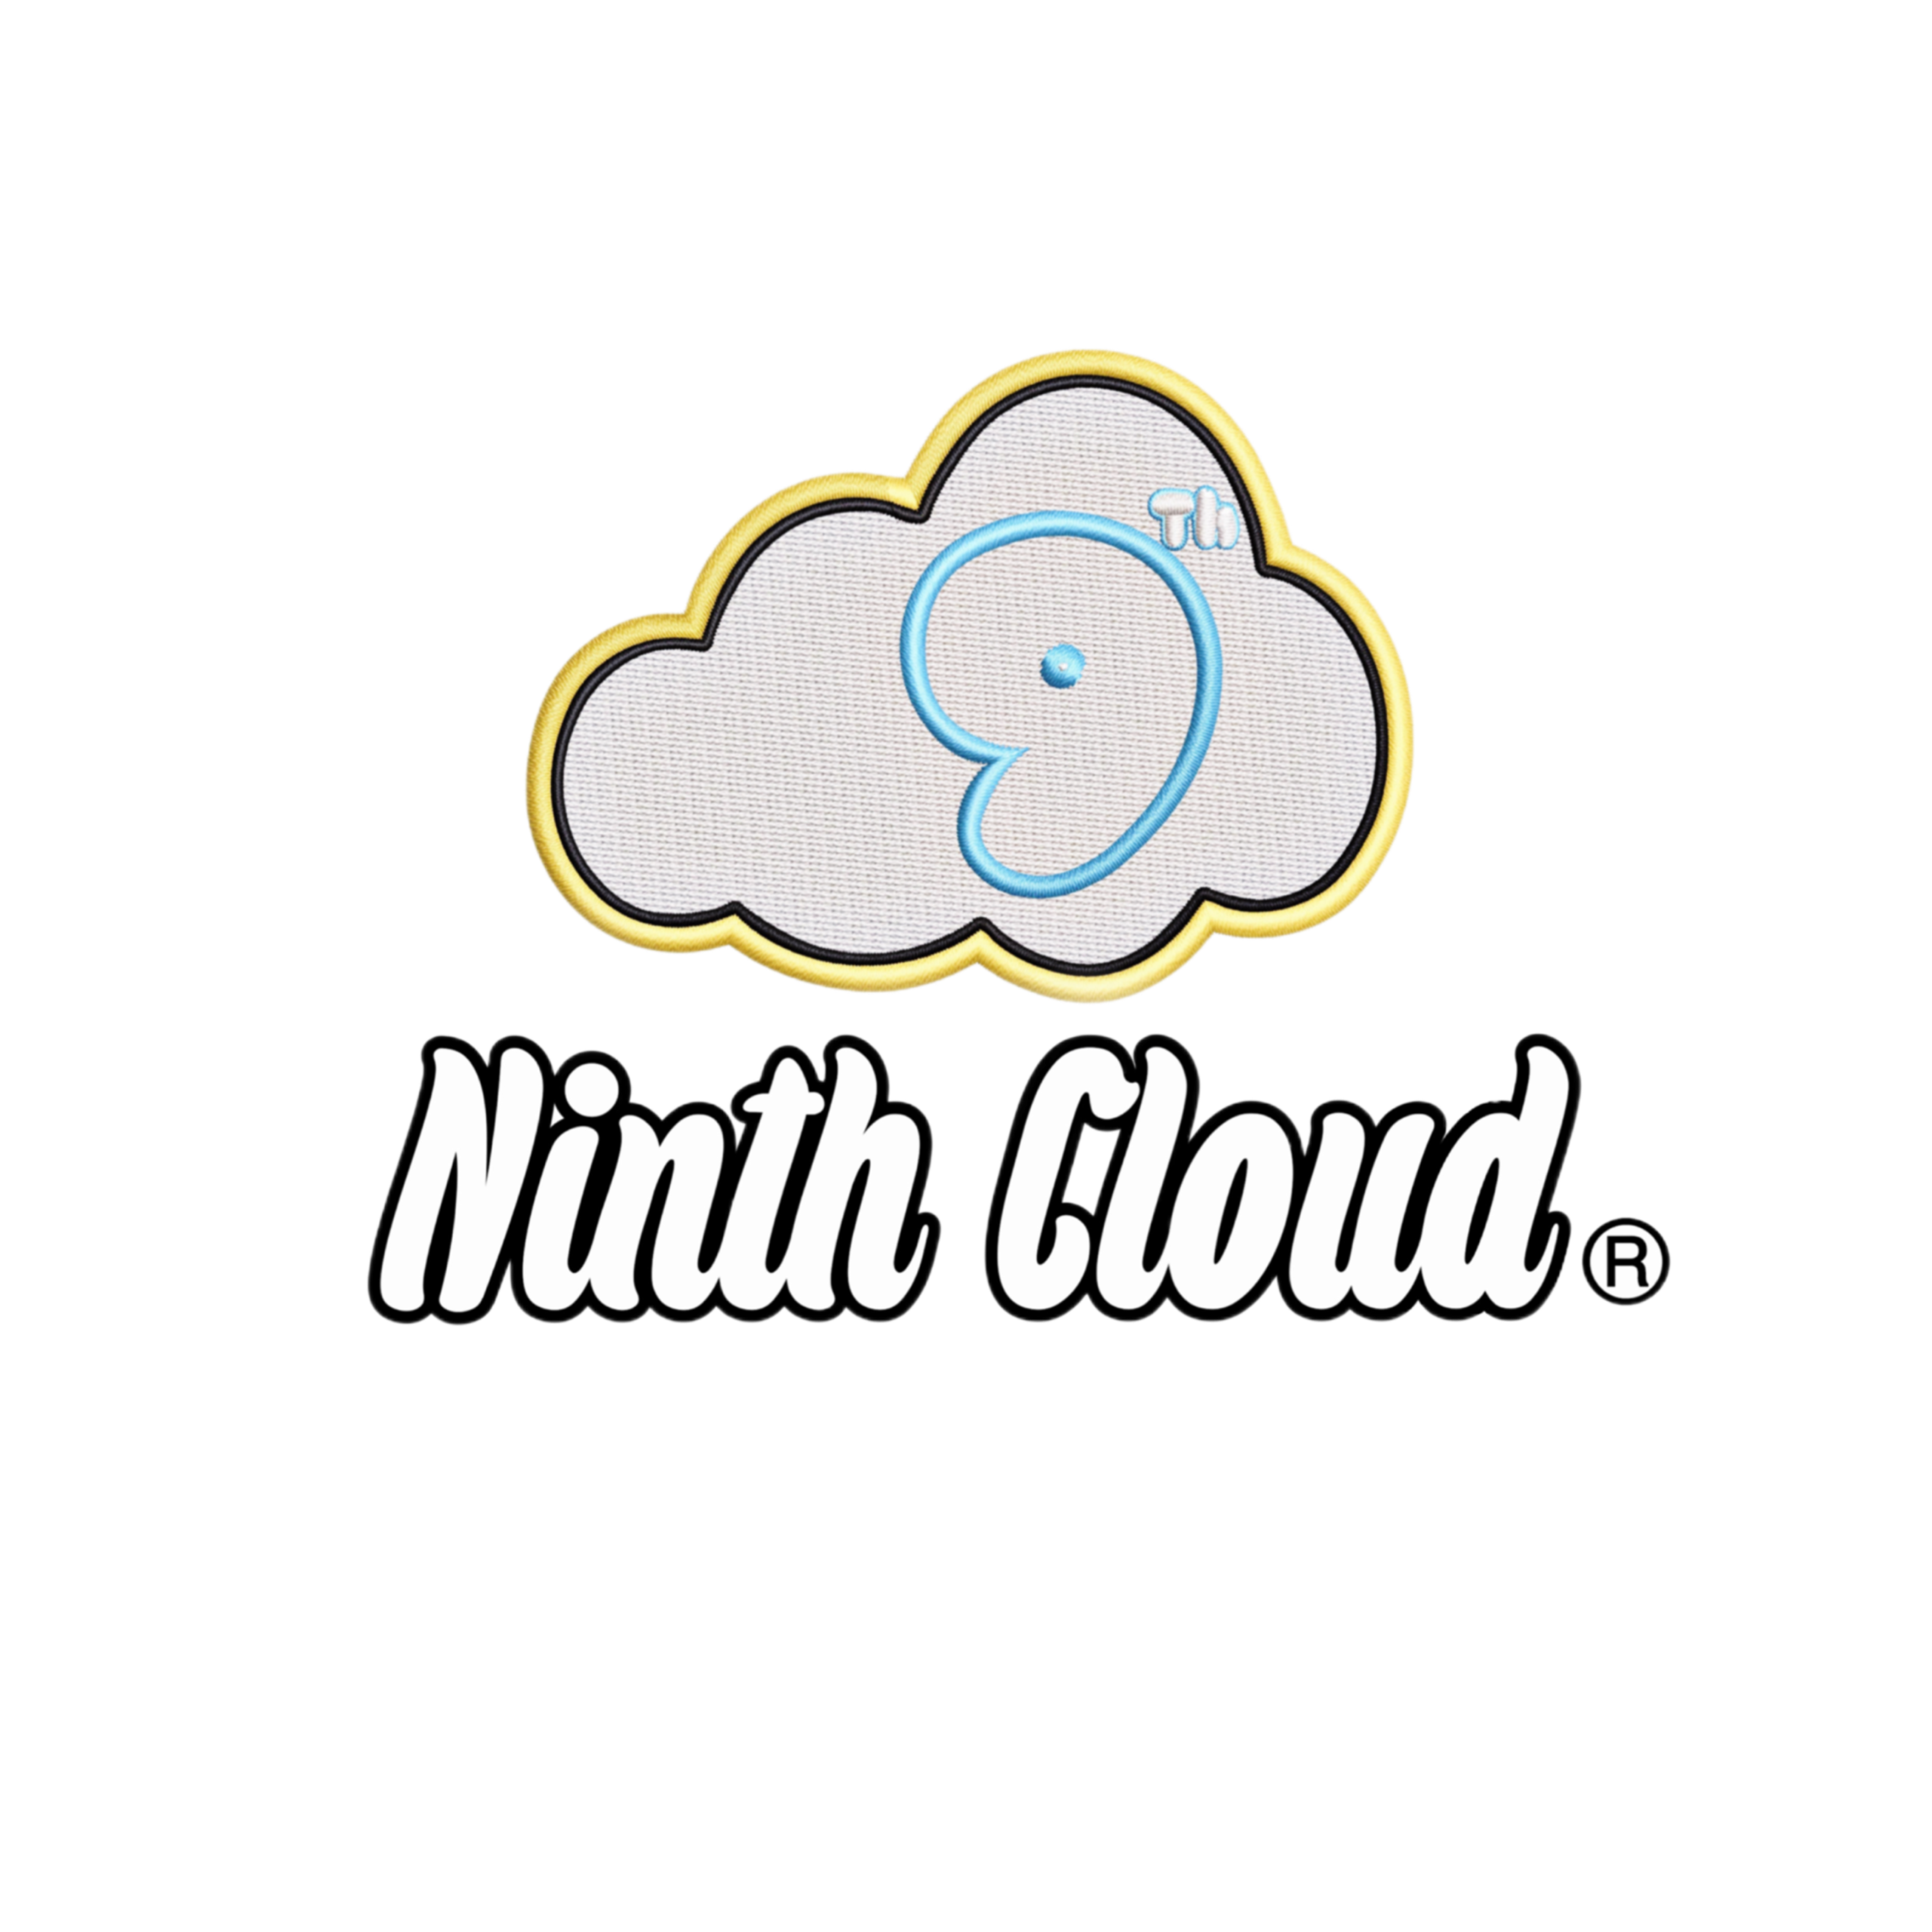 Ninth Cloud